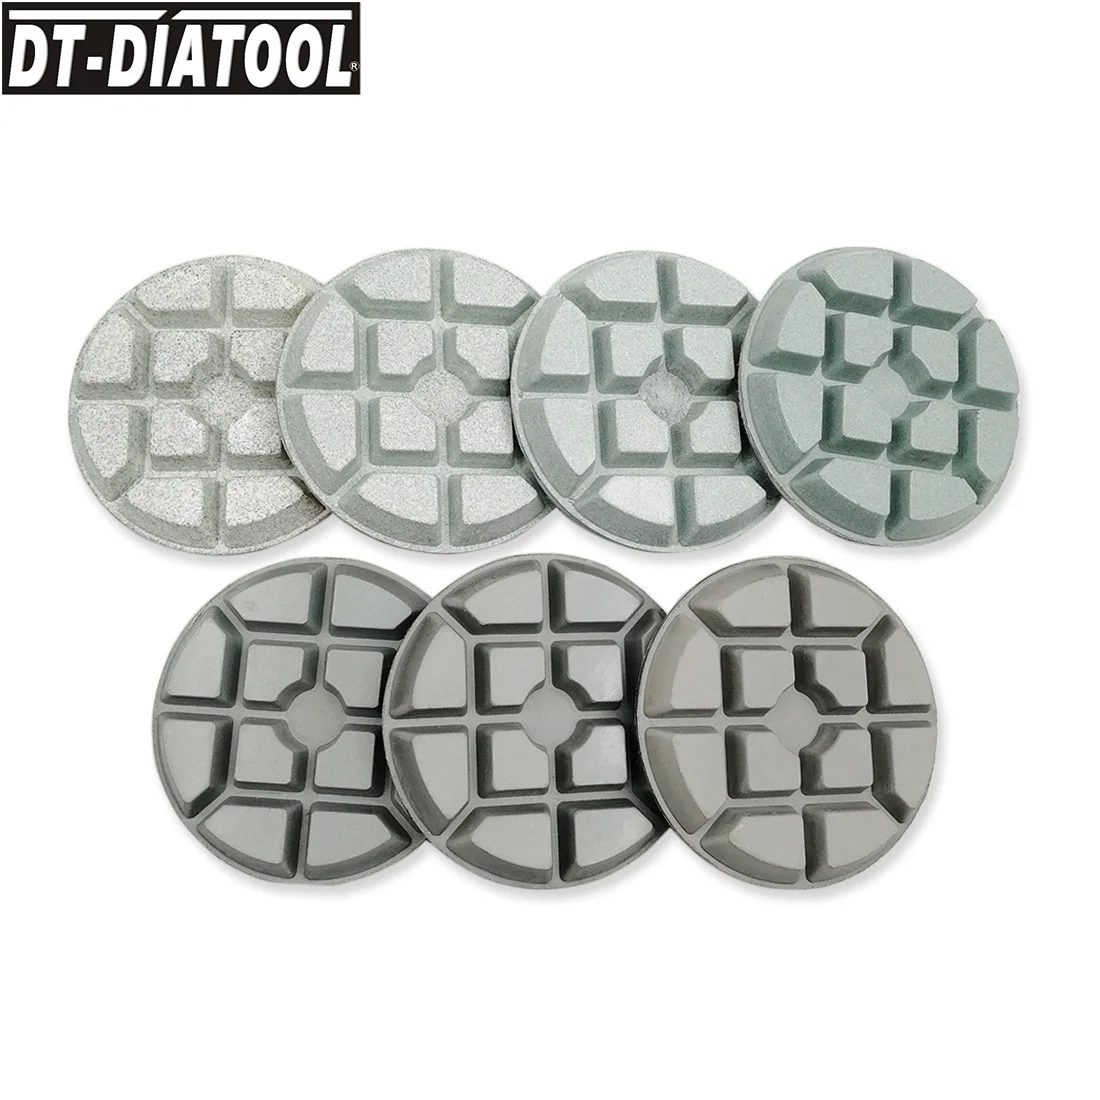 DT-DIATOOL 9pcs/set Dia 3inch/80 mm, Diamant Smolo Obveznic Konkretne Poliranje Brušenje Diskov Za Konkretne polaganje teraca Cementa